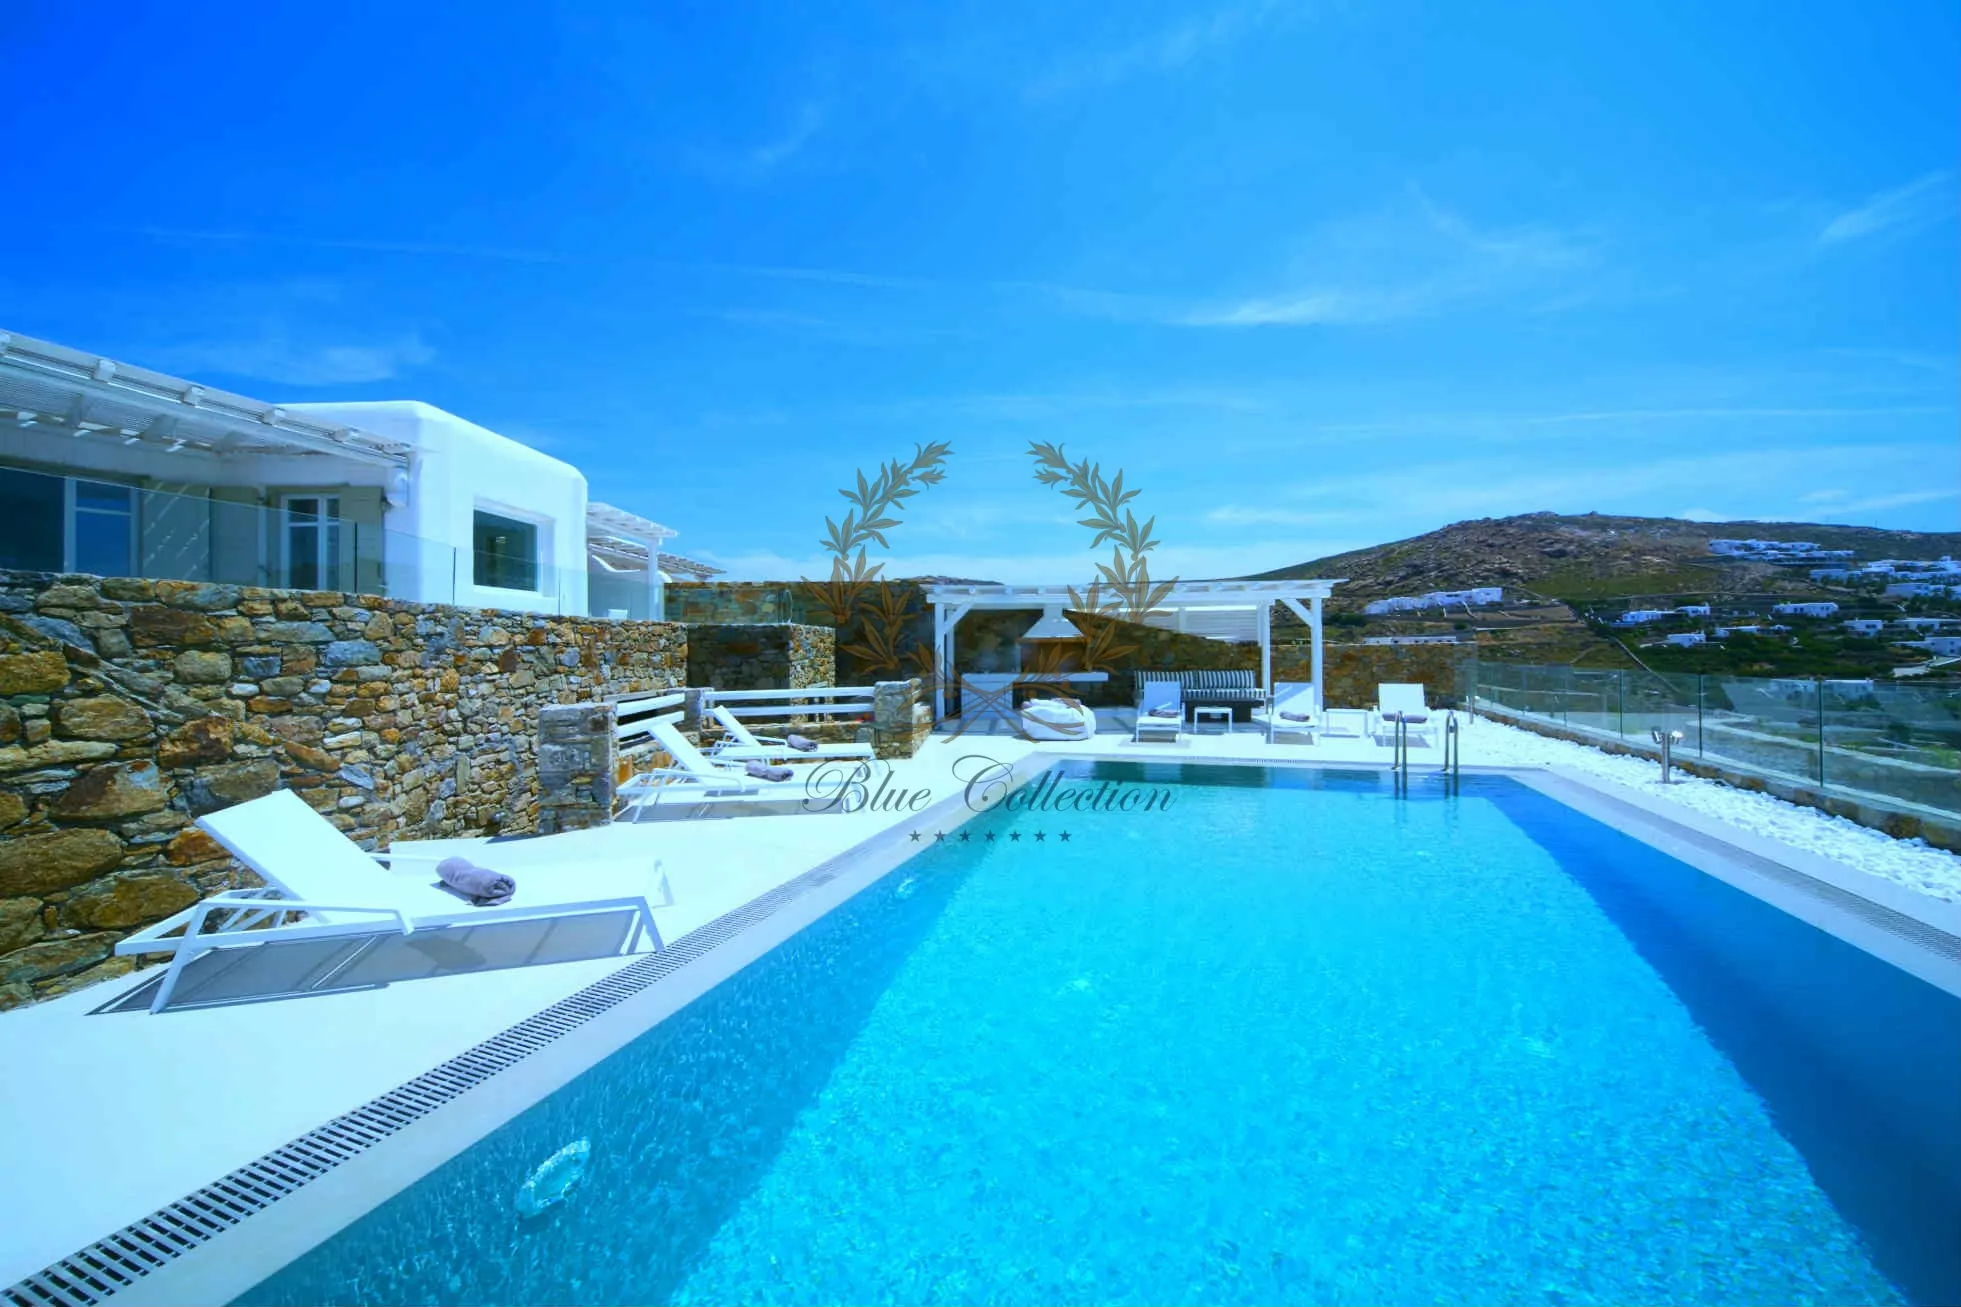 Mykonos - Greece | Elia – Private Villa with Pool & Sea view for rent | Sleeps 6+3 | 3+1 Bedrooms | 3 Bathrooms | REF: 180412122 | CODE: ELO-1